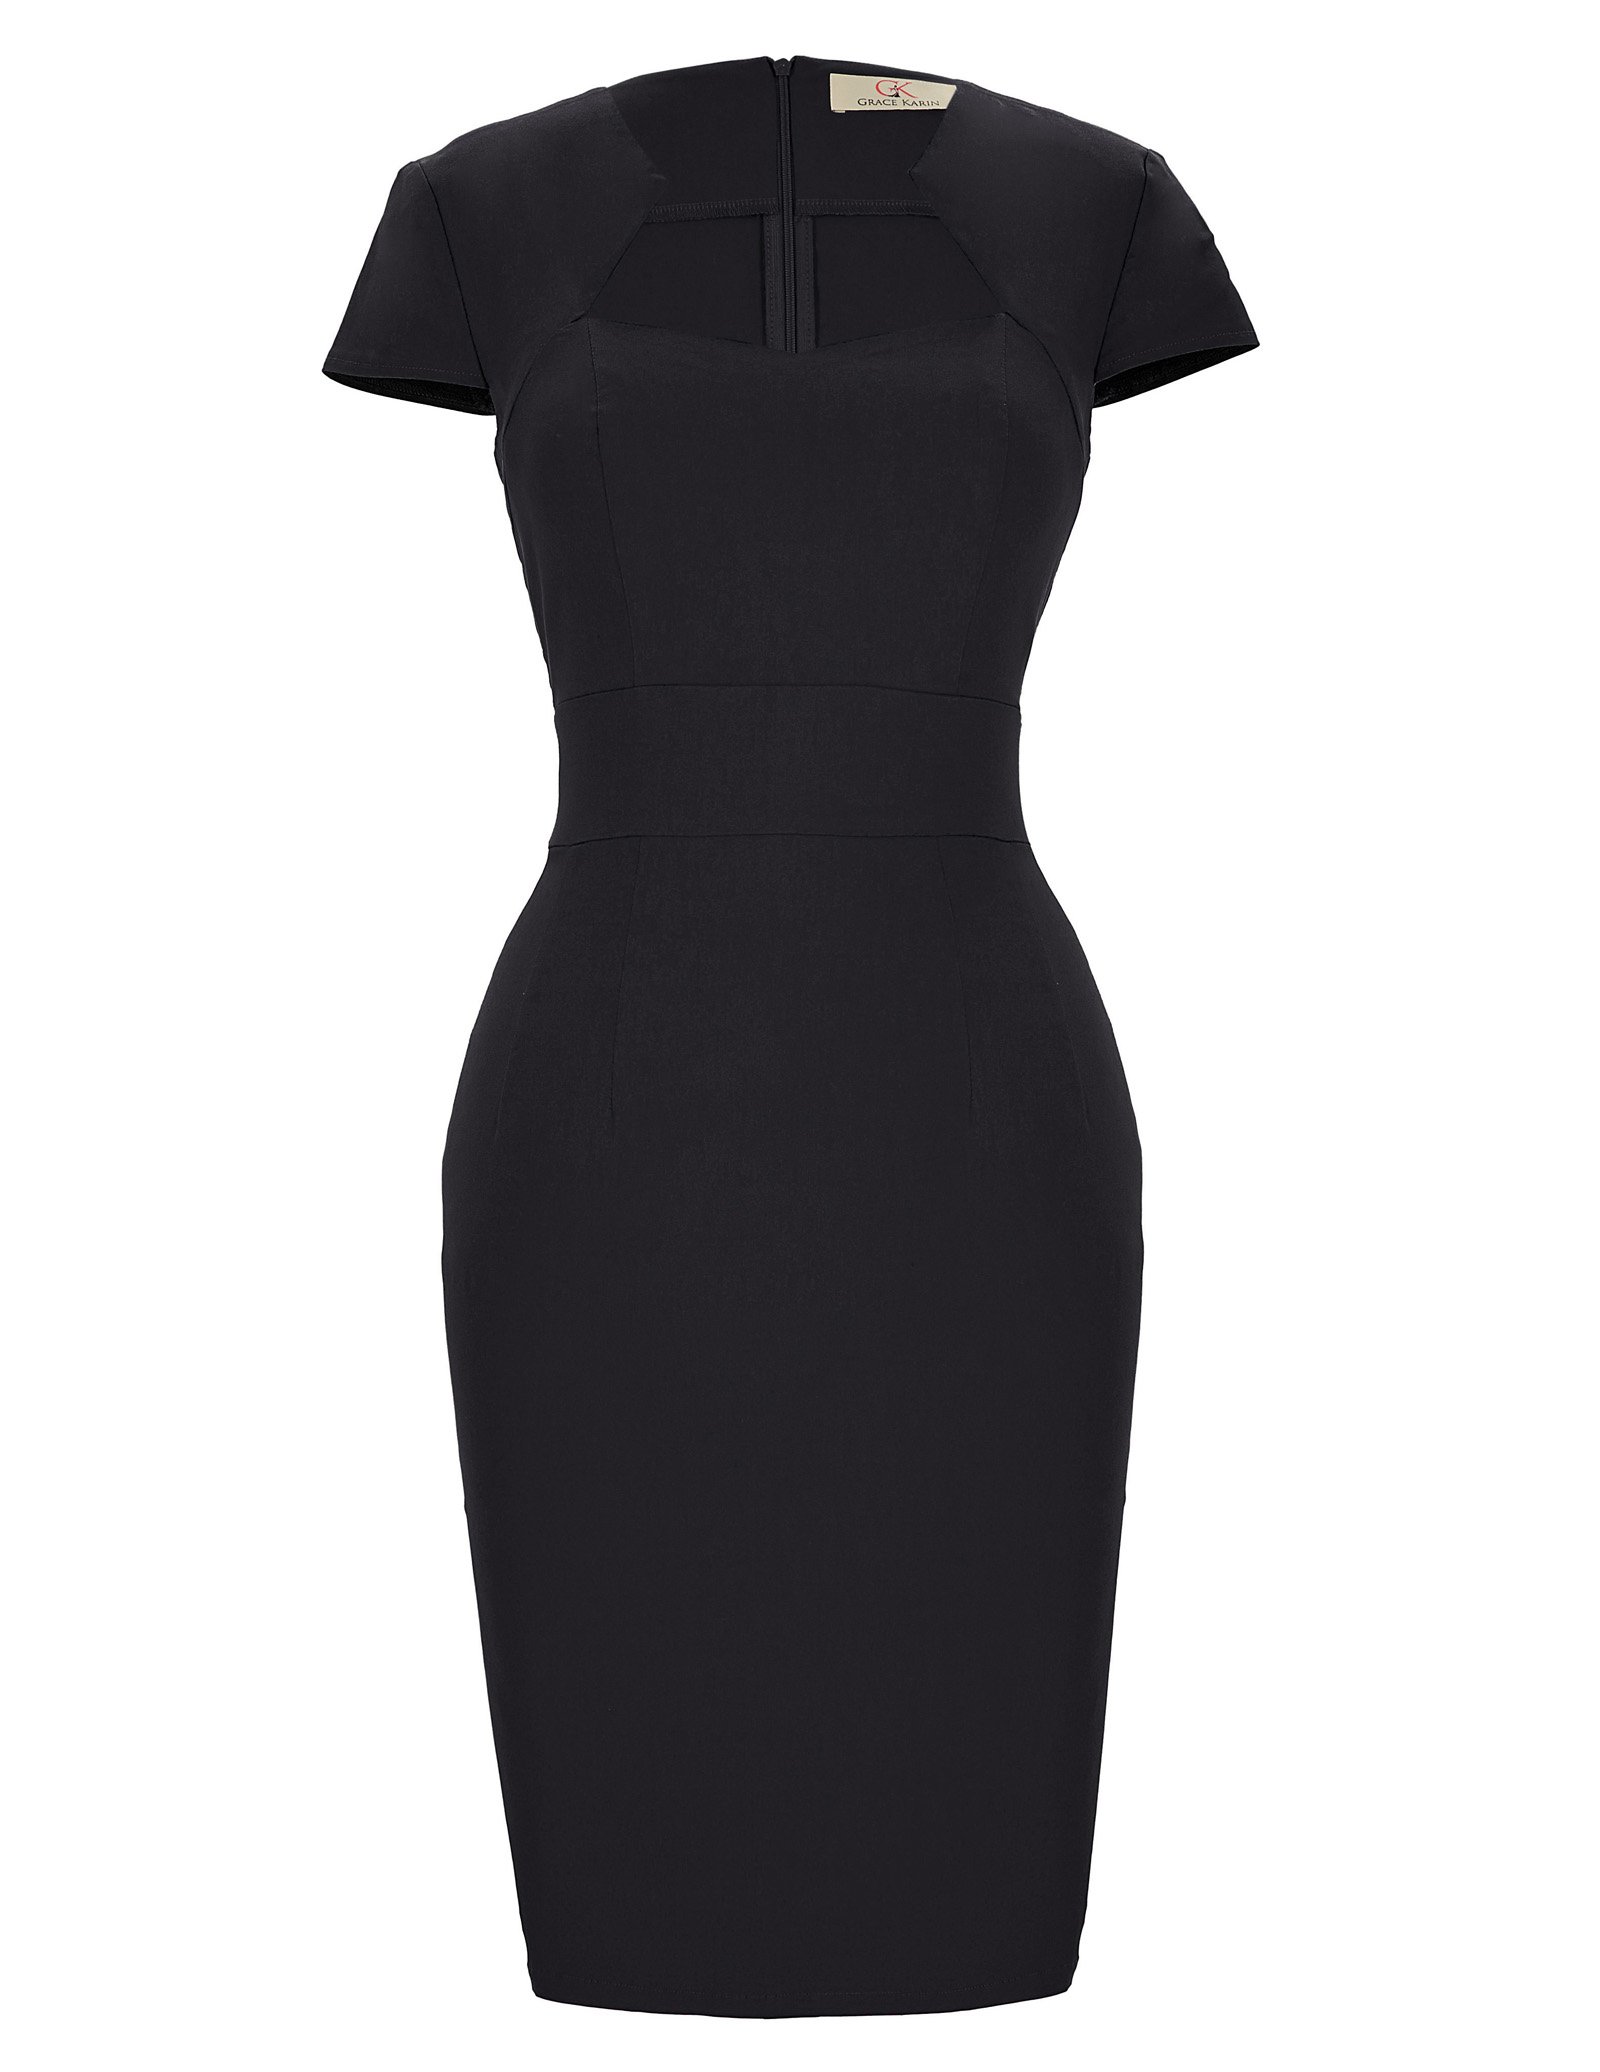 GRACE KARIN Retro Kleider 50er Vintage Kleid Damen Rockabilly Kleid schwarz Kleid Freizeitkleid CL8947-1 L